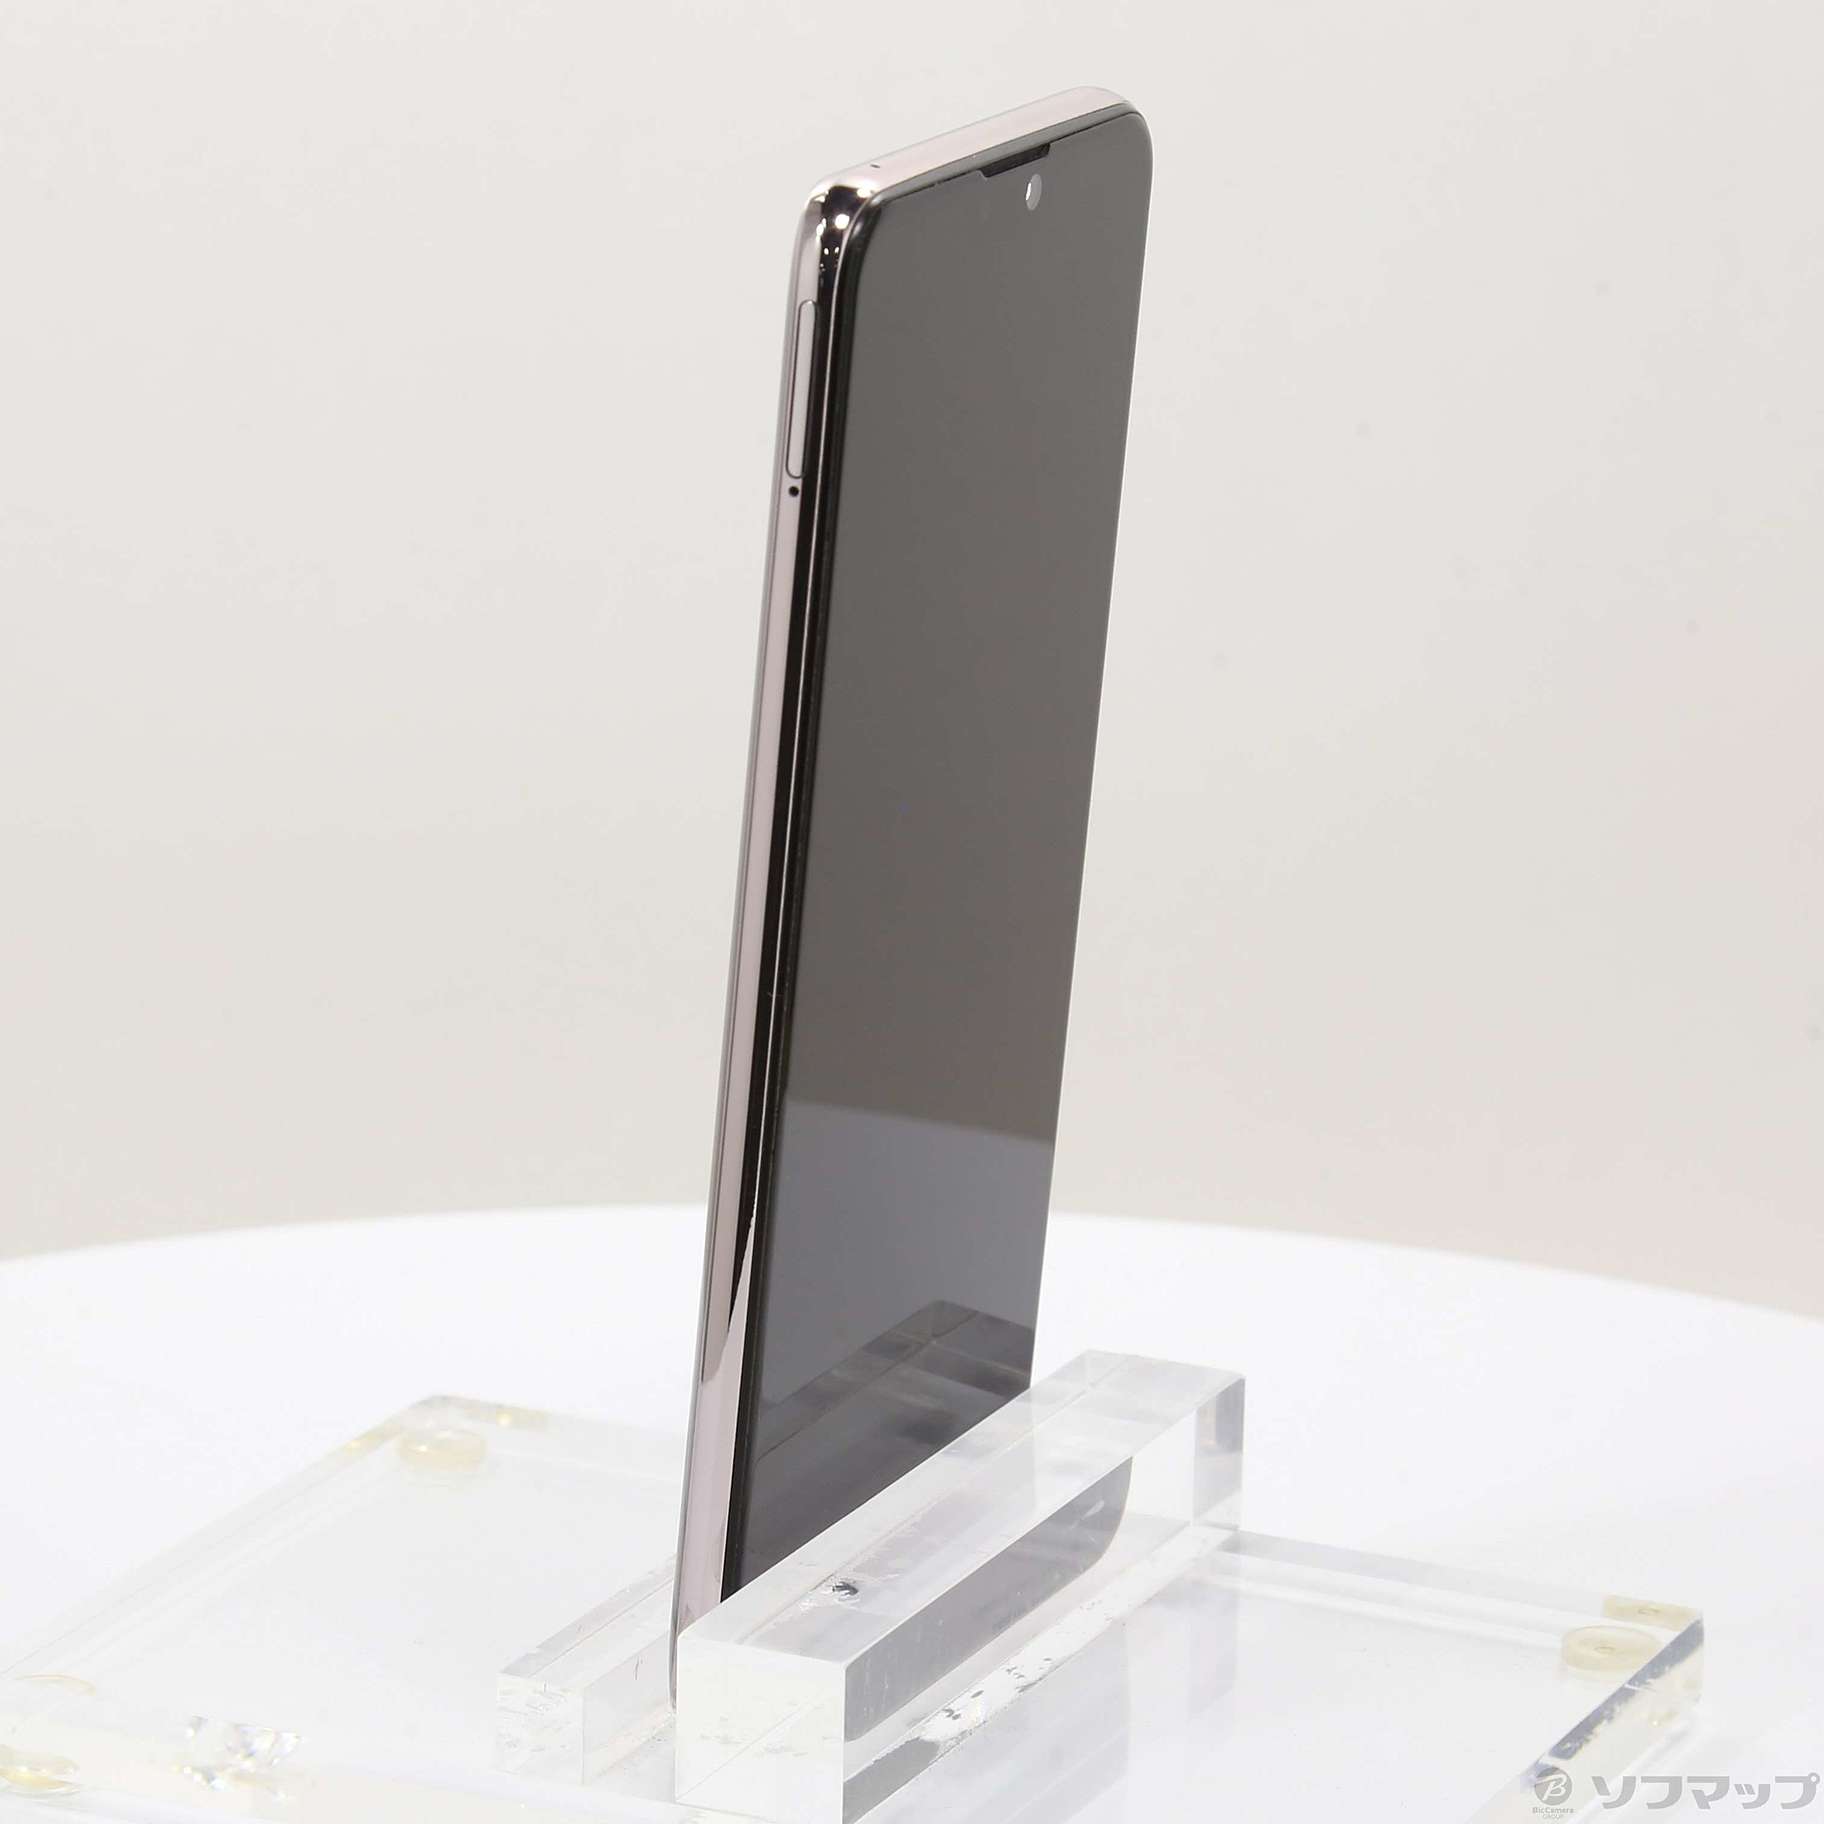 中古】ZenFone Max Pro M2 64GB コズミックチタニウム ZB631KL-TI64S4 ...